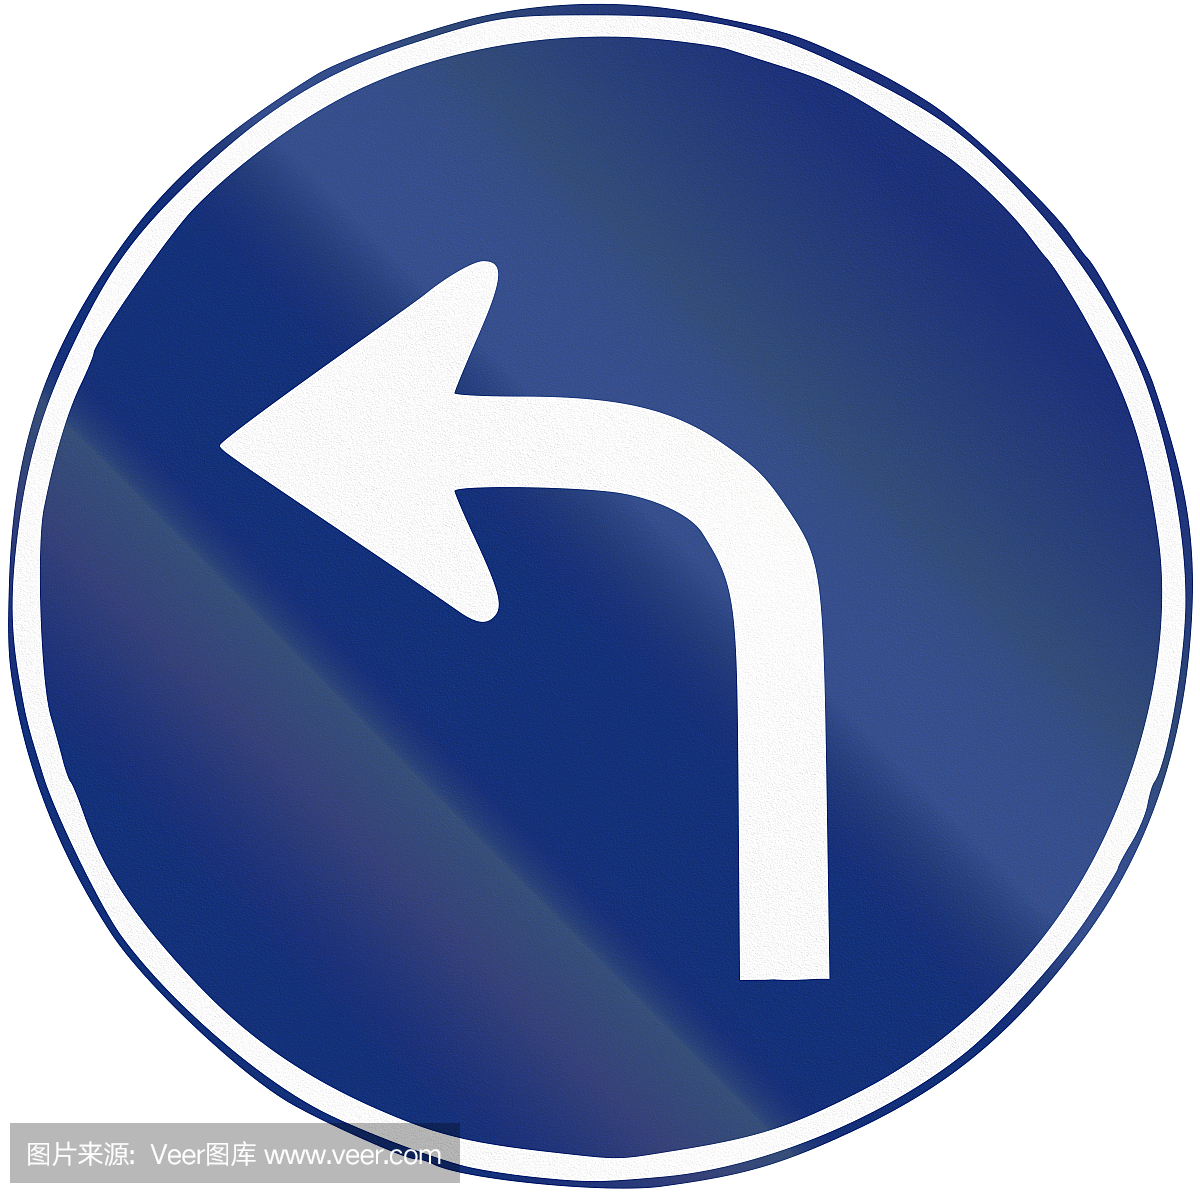 西班牙使用的道路标志 - 左转